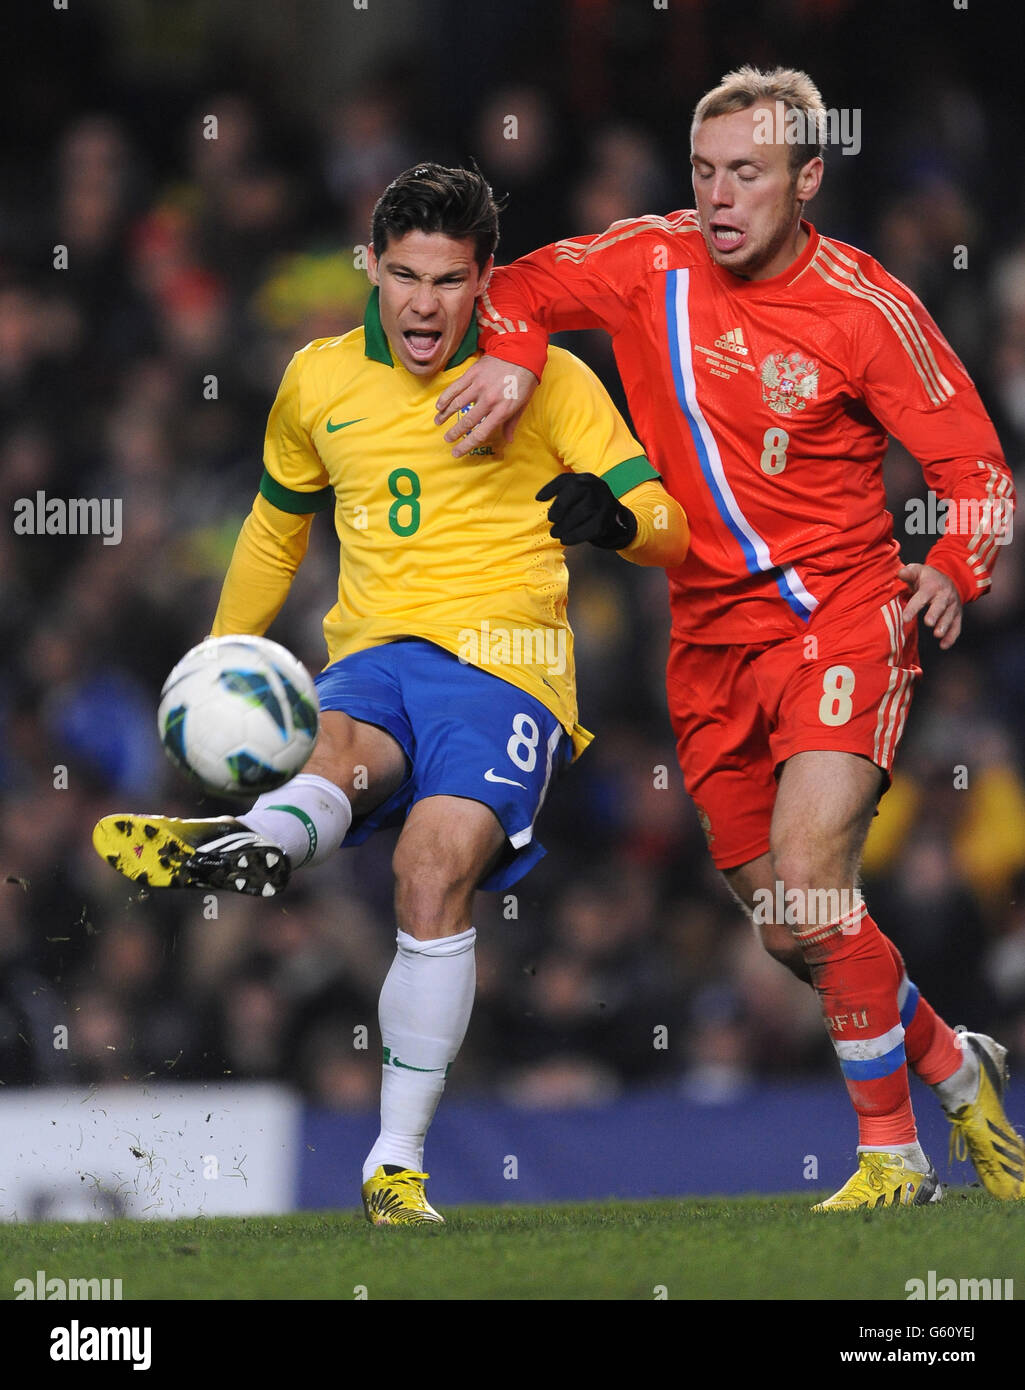 Soccer - International Friendly - Brazil v Russia - Stamford Bridge. Brazil's Hernanes (left) and Russia's Denis Glushhakor (right) battle for the ball. Stock Photo